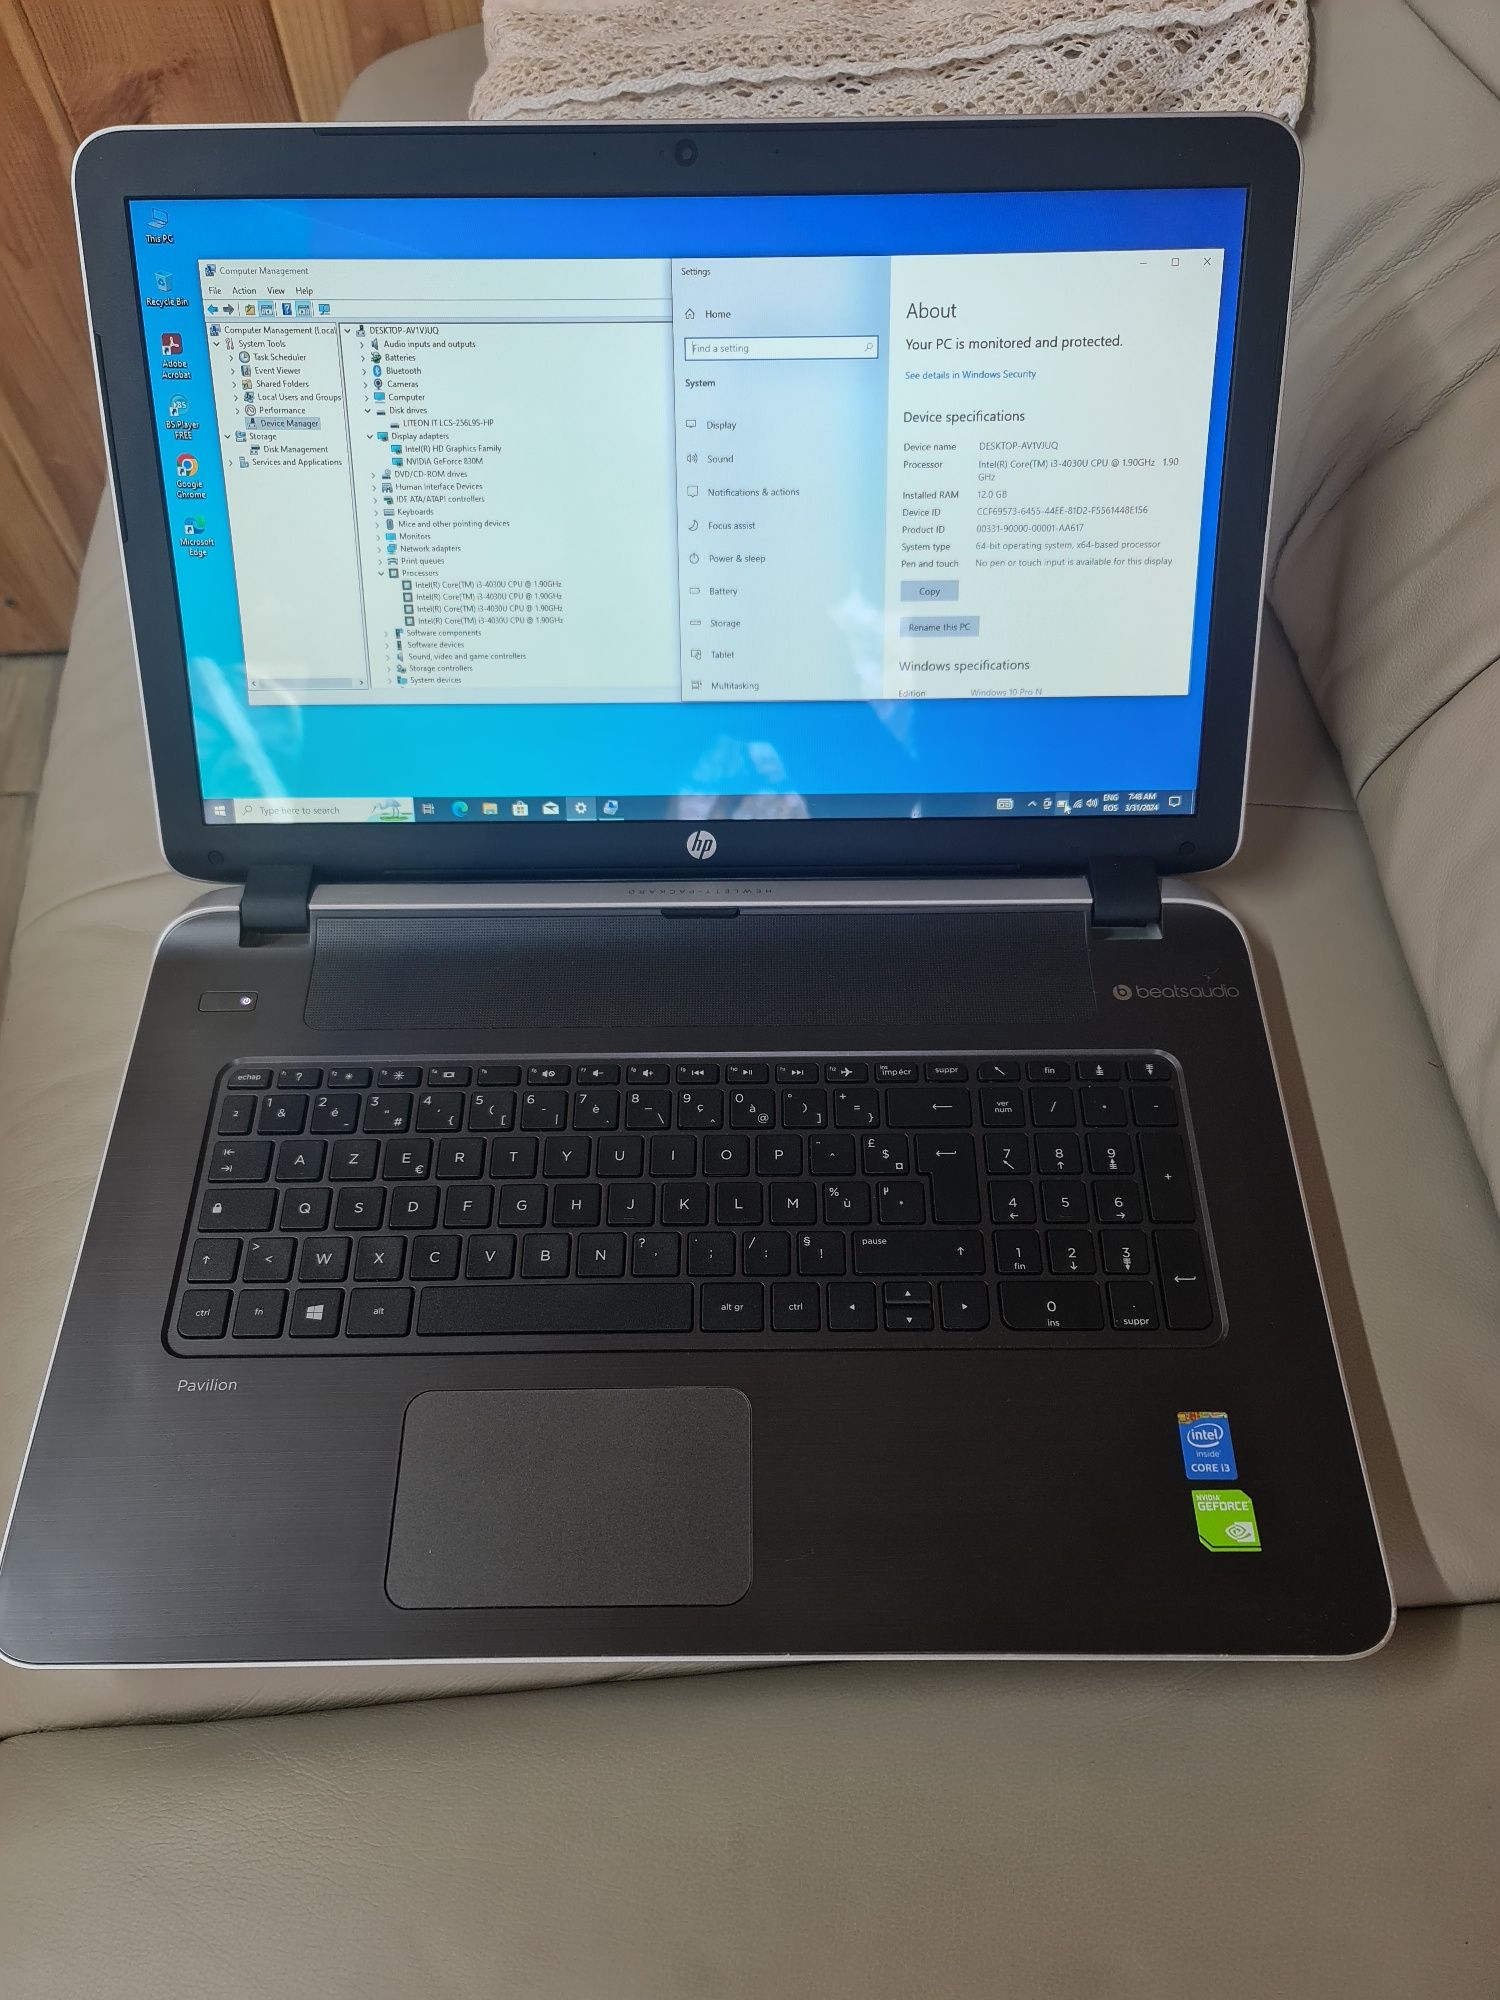 Laptop HP, display 17, i3-4030U, 12gb ram, ssd 256gb